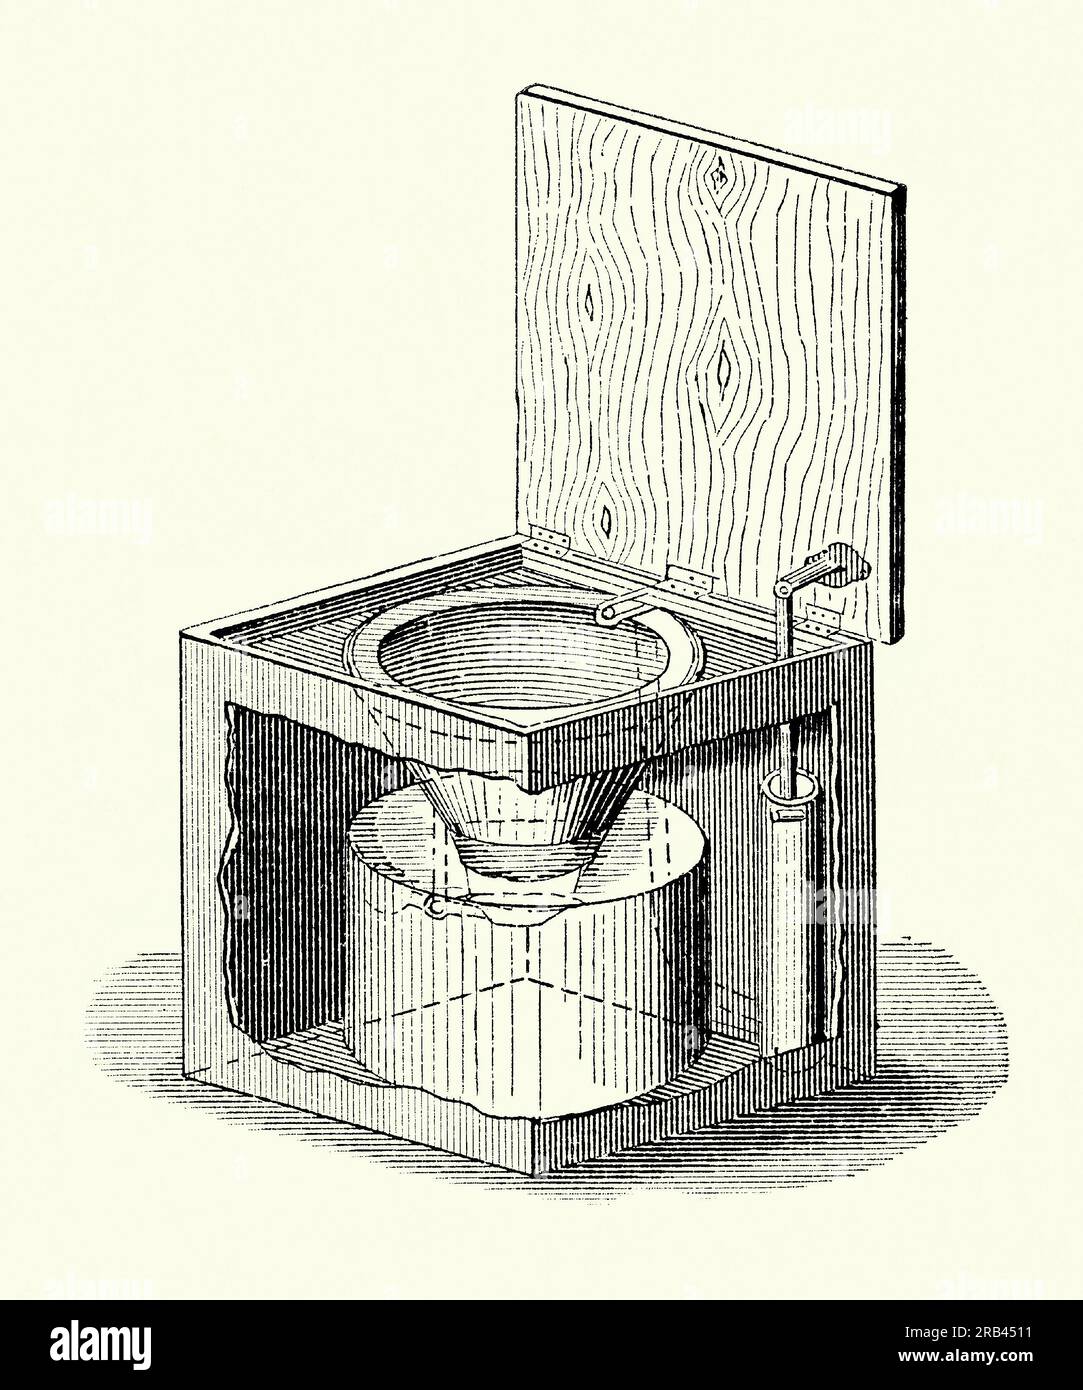 Une vieille gravure d'une toilette portative victorienne ou d'une commode. Il est tiré d'un livre de génie mécanique des années 1880 Les toilettes ont été conçues comme une armoire, un meuble en bois qui se fonderait dans un décor de chambre à coucher de l'époque. Cette toilette avait un mécanisme de chasse d'eau. La fermeture du couvercle a activé une pompe (à droite) qui rinçait et vidait la cuvette des toilettes dans la chambre inférieure. Ceux qui ne pouvaient pas se permettre ce genre de dispositif pour leurs besoins de nuit utilisaient souvent un pot de chambre qui serait conservé sous le lit. Banque D'Images